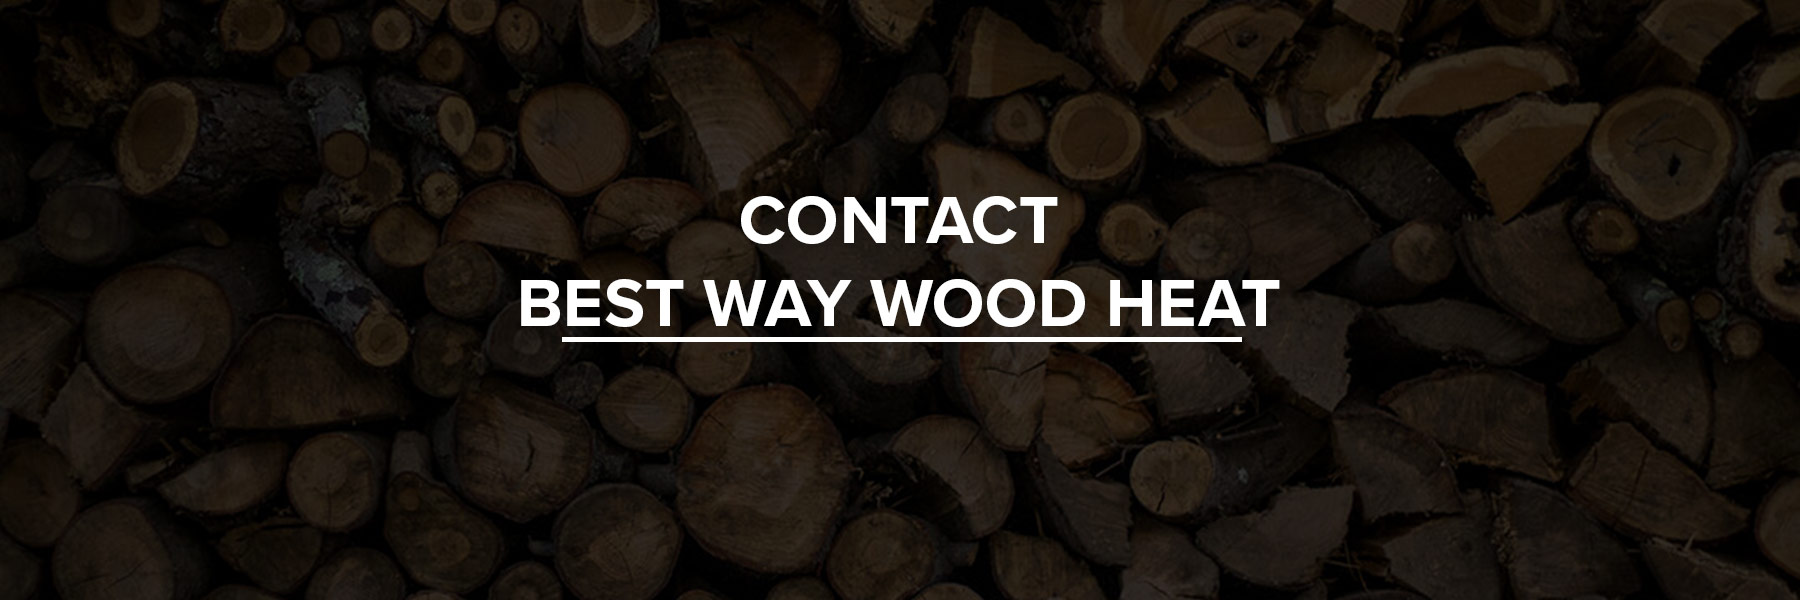 contact best way wood heat